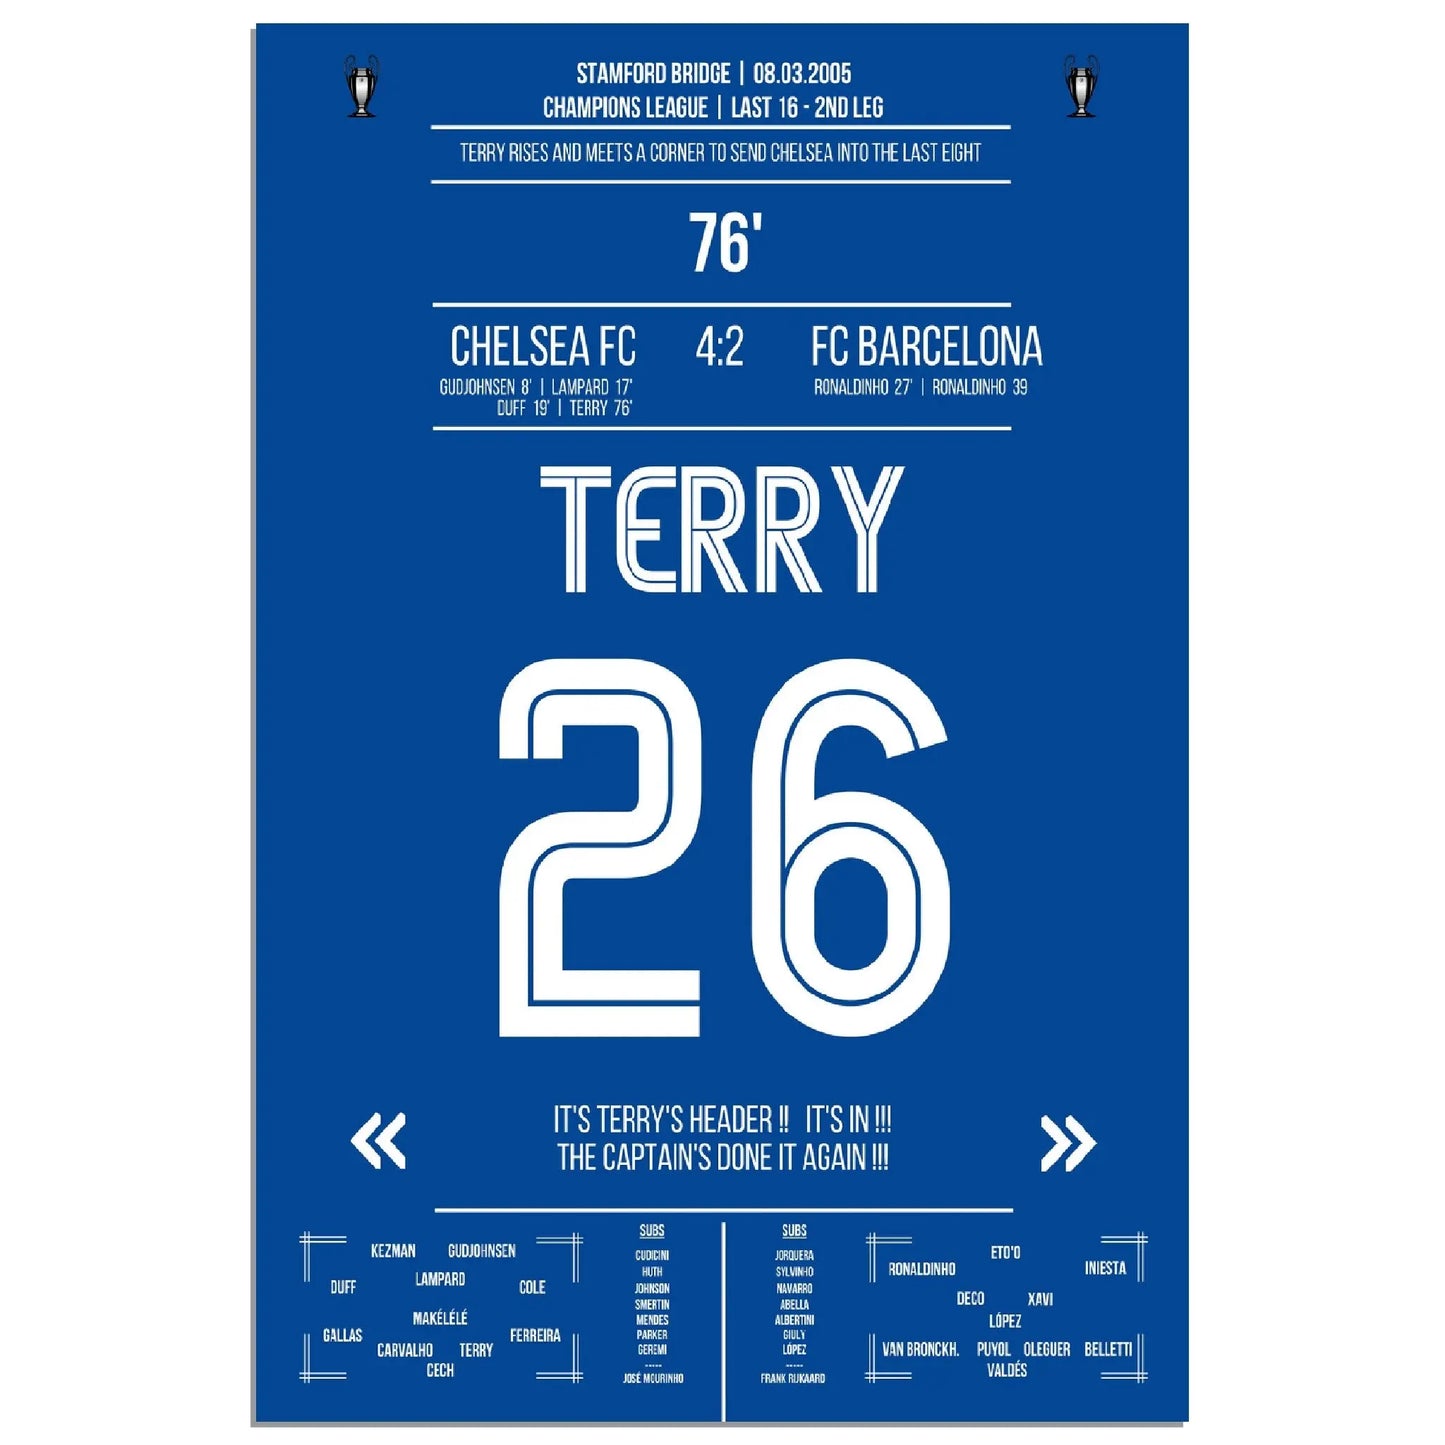 Terry's Siegtreffer in einem der besten Champions League Begegnungen der Geschichte 